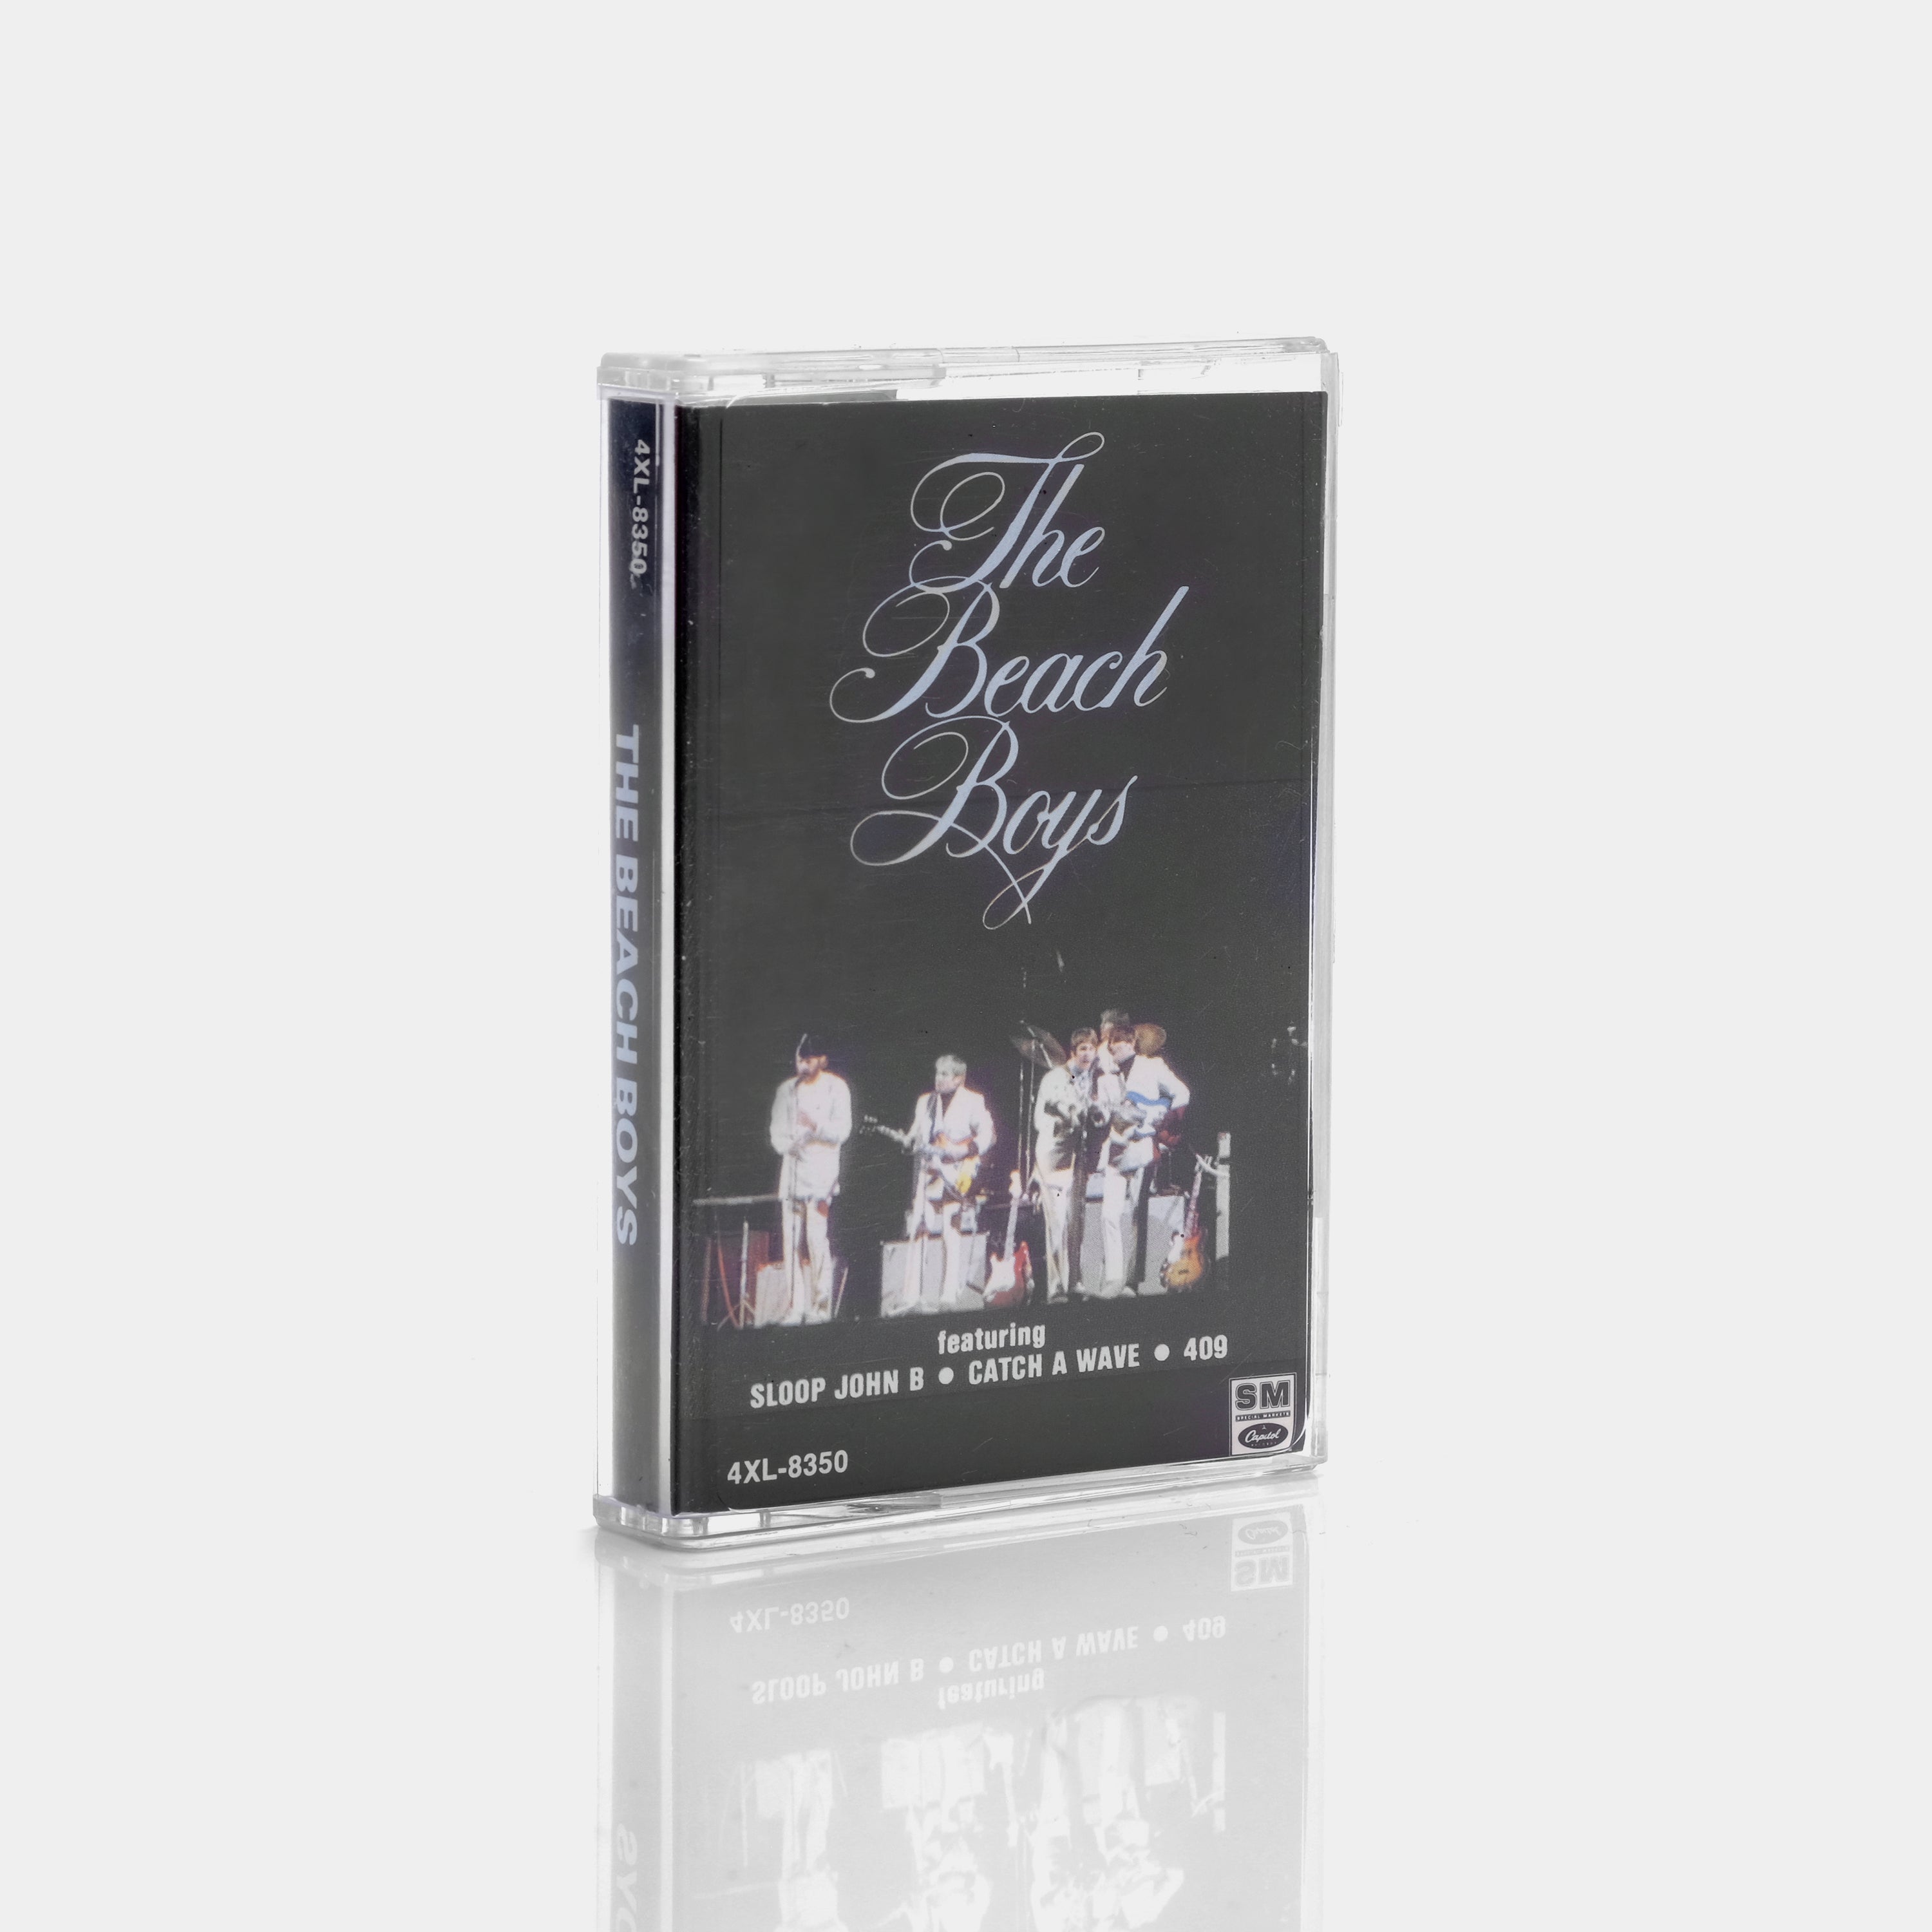 The Beach Boys - The Beach Boys Cassette Tape